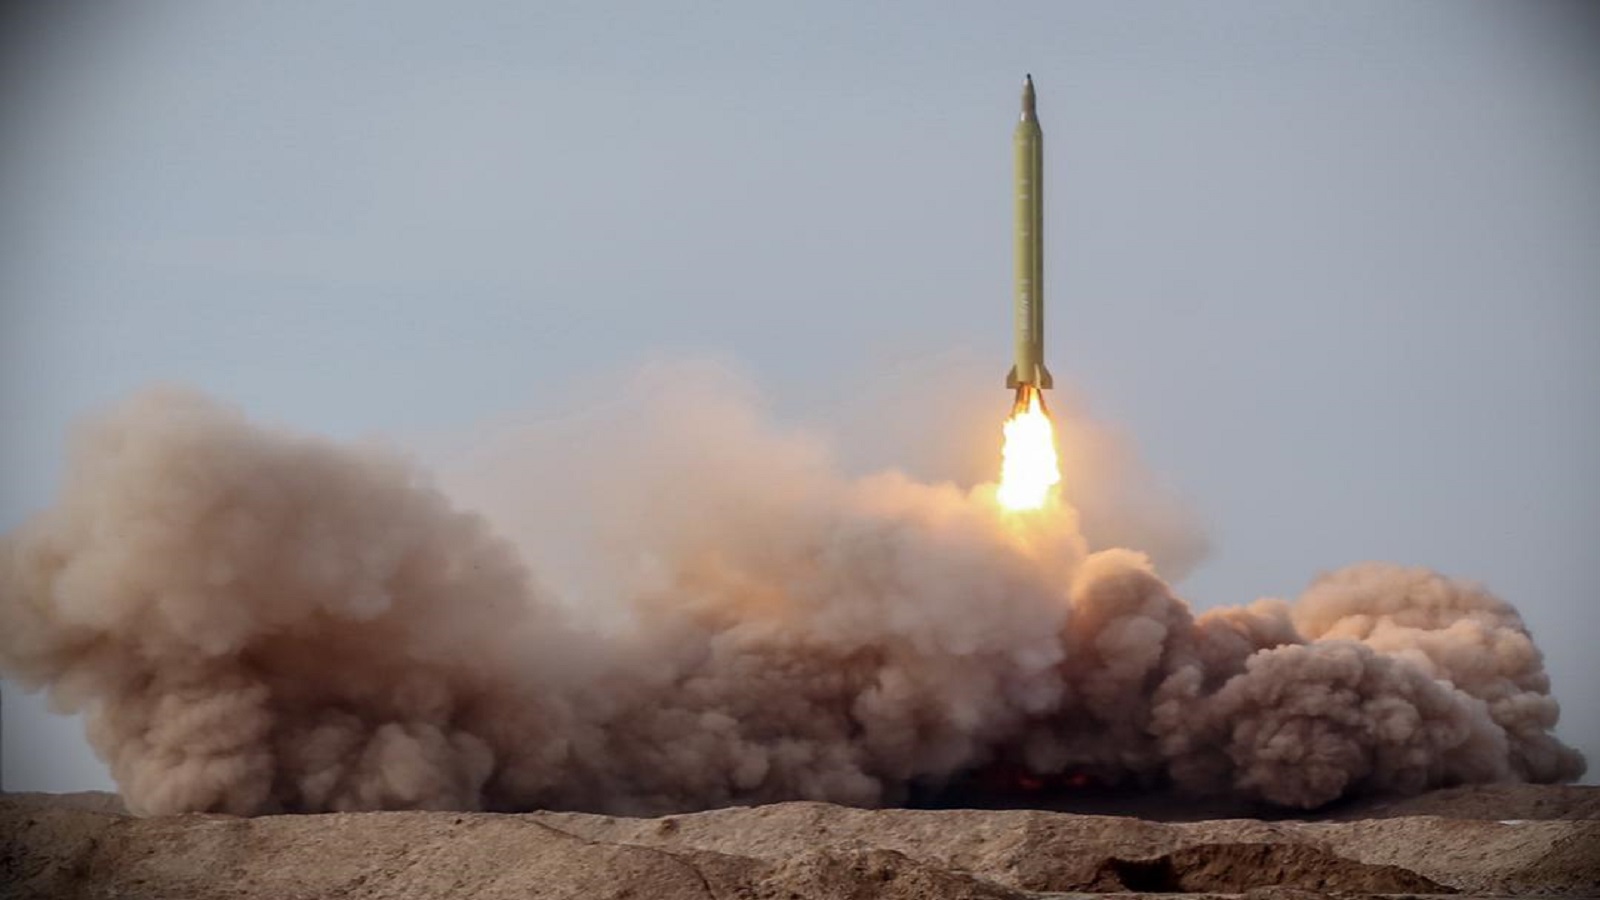 المناورات الإيرانية:الصواريخ كادت تقترب من حاملة أميركية